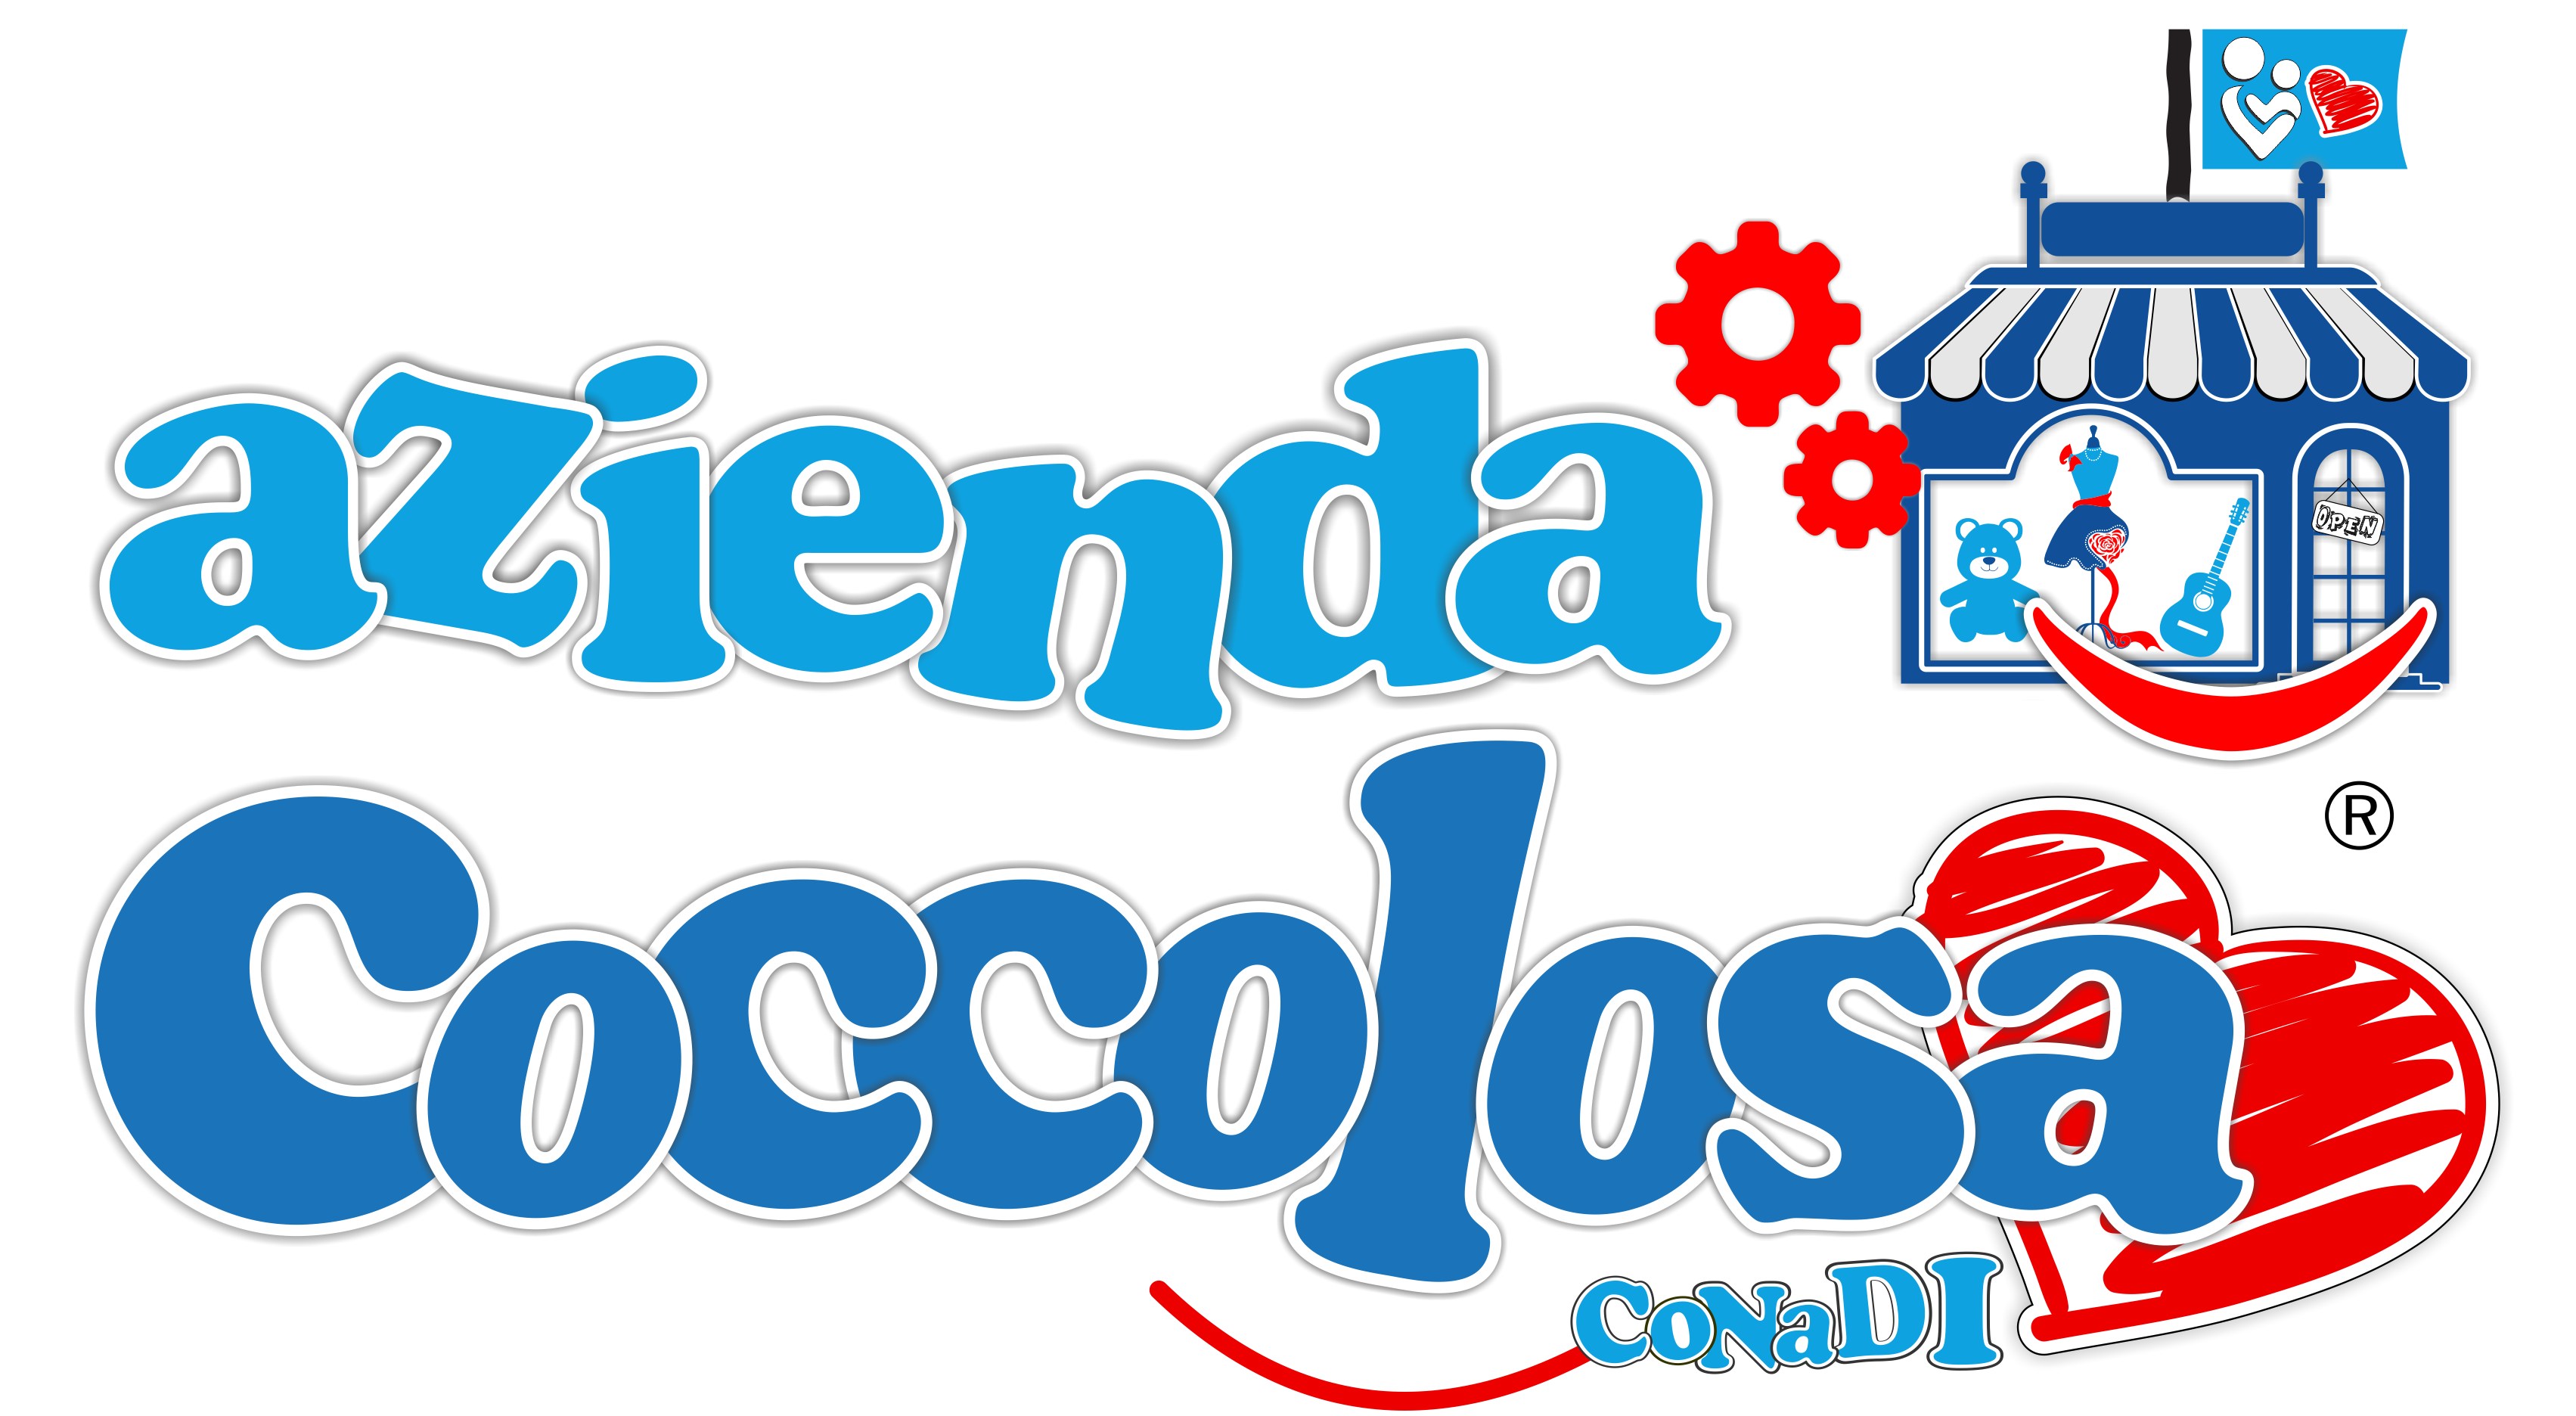 logo progetto Azienda Coccolosa